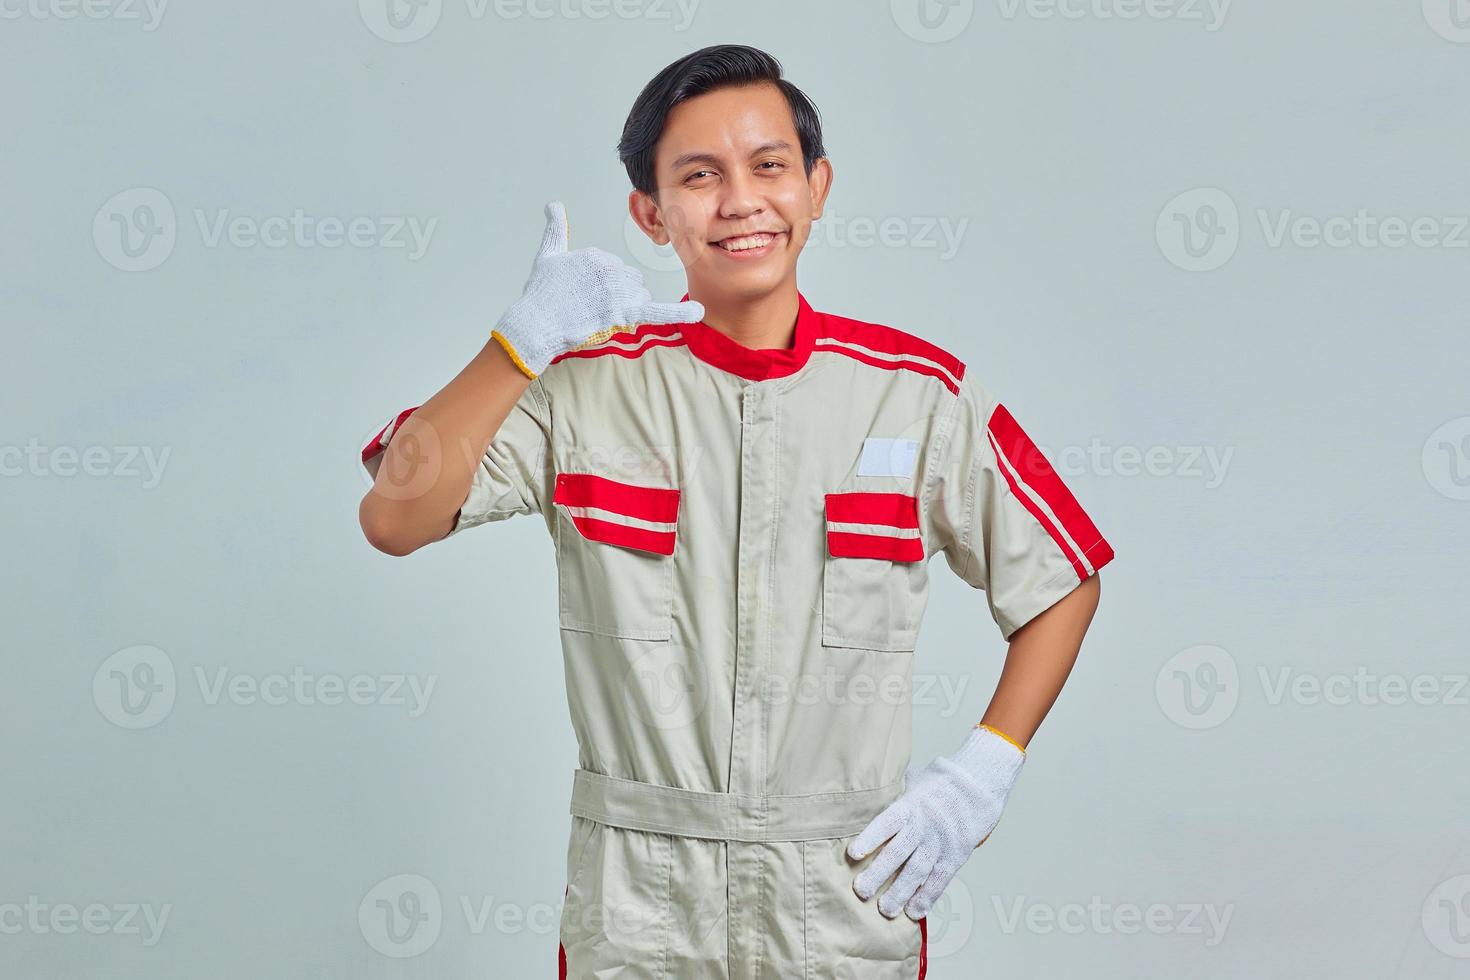 portret van een vrolijke knappe man met een mechanisch uniform dat goedkeuring toont met een duim omhoog gebaar op een grijze achtergrond foto